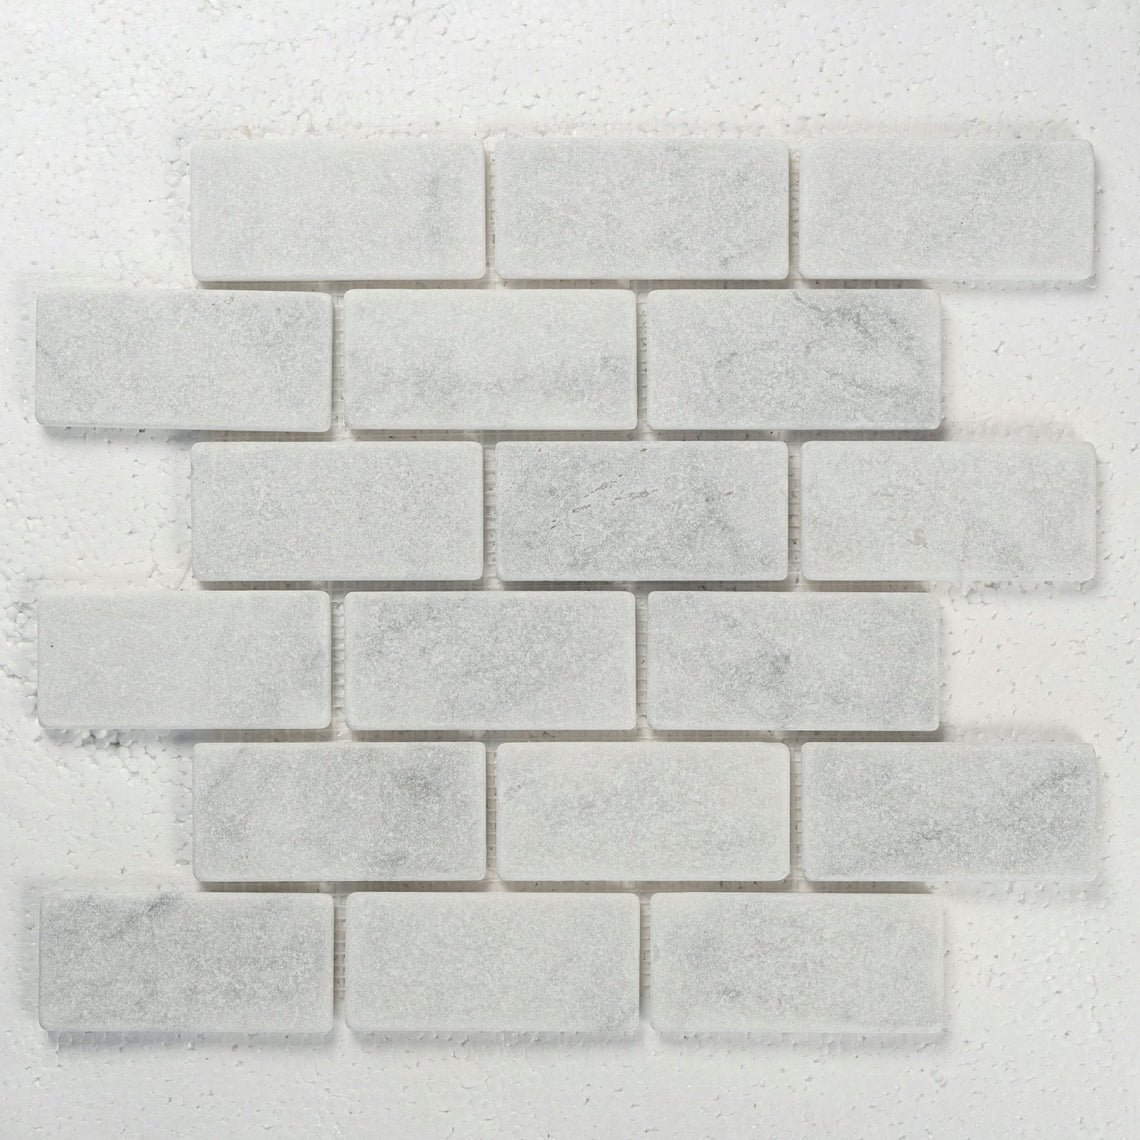 12 X 12 in. Bianco Carrara 2x4 brick White Honed Tumbled Marble Mosaic